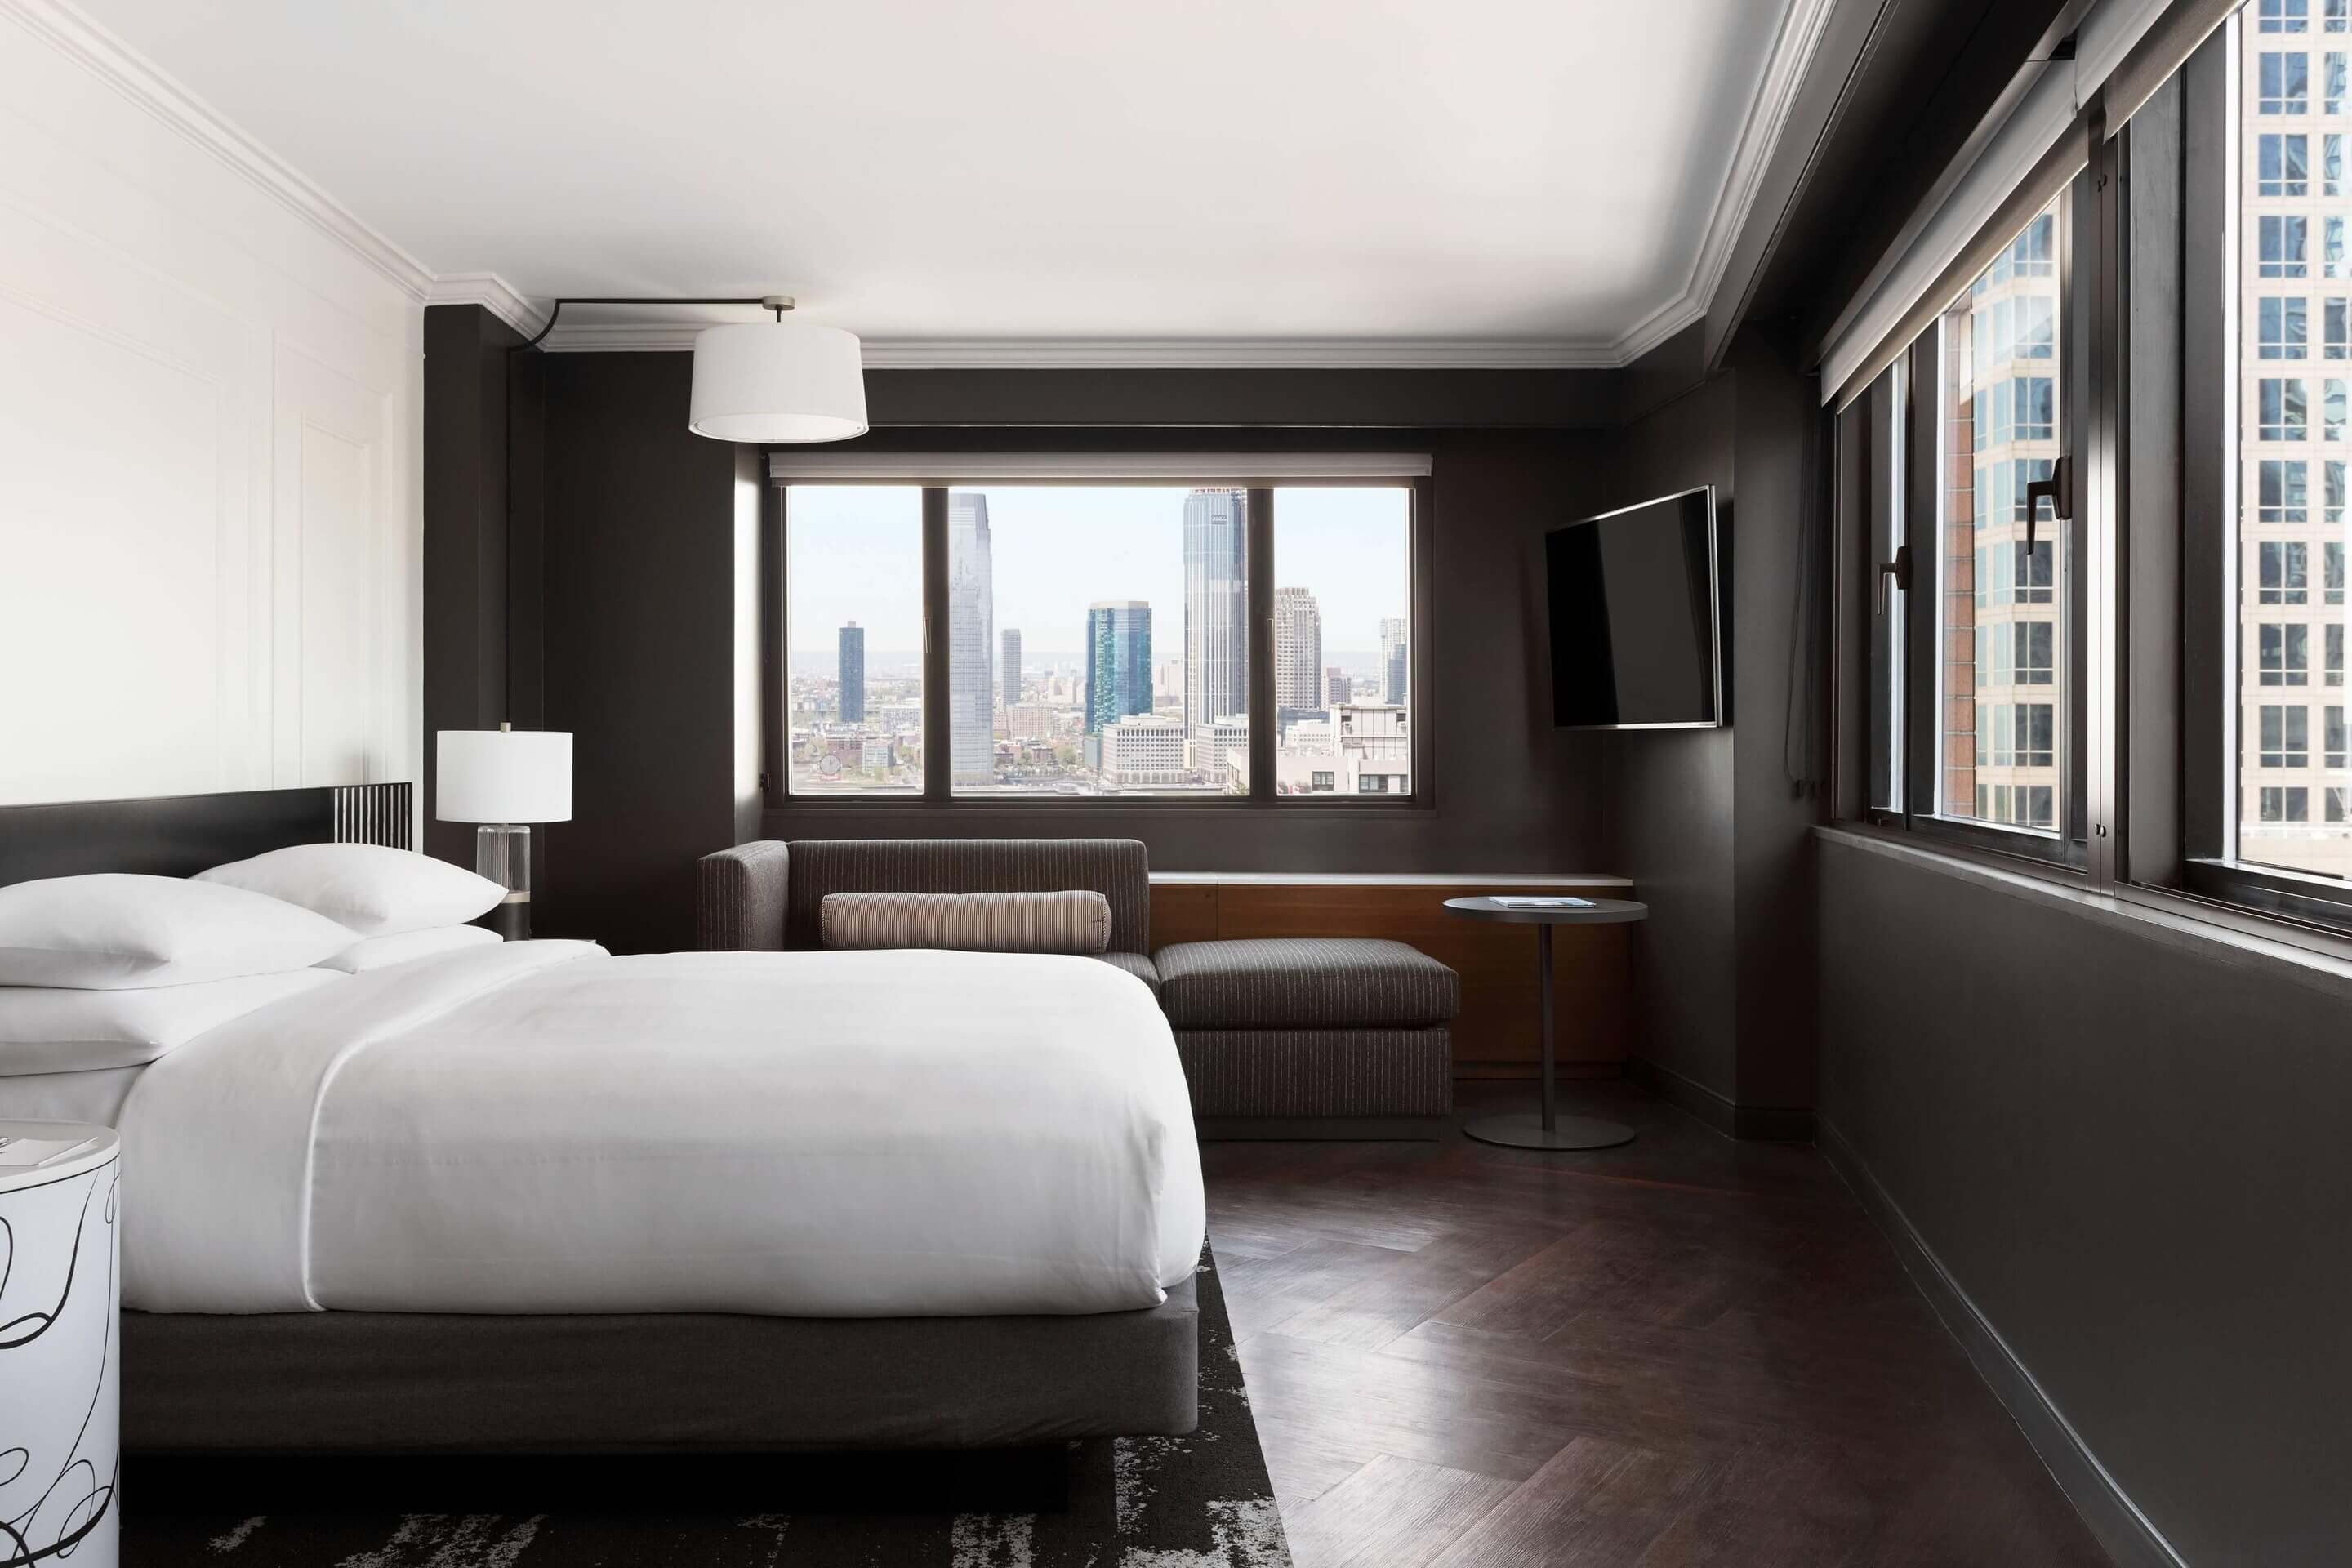 New York Marriott Bedroom Suite